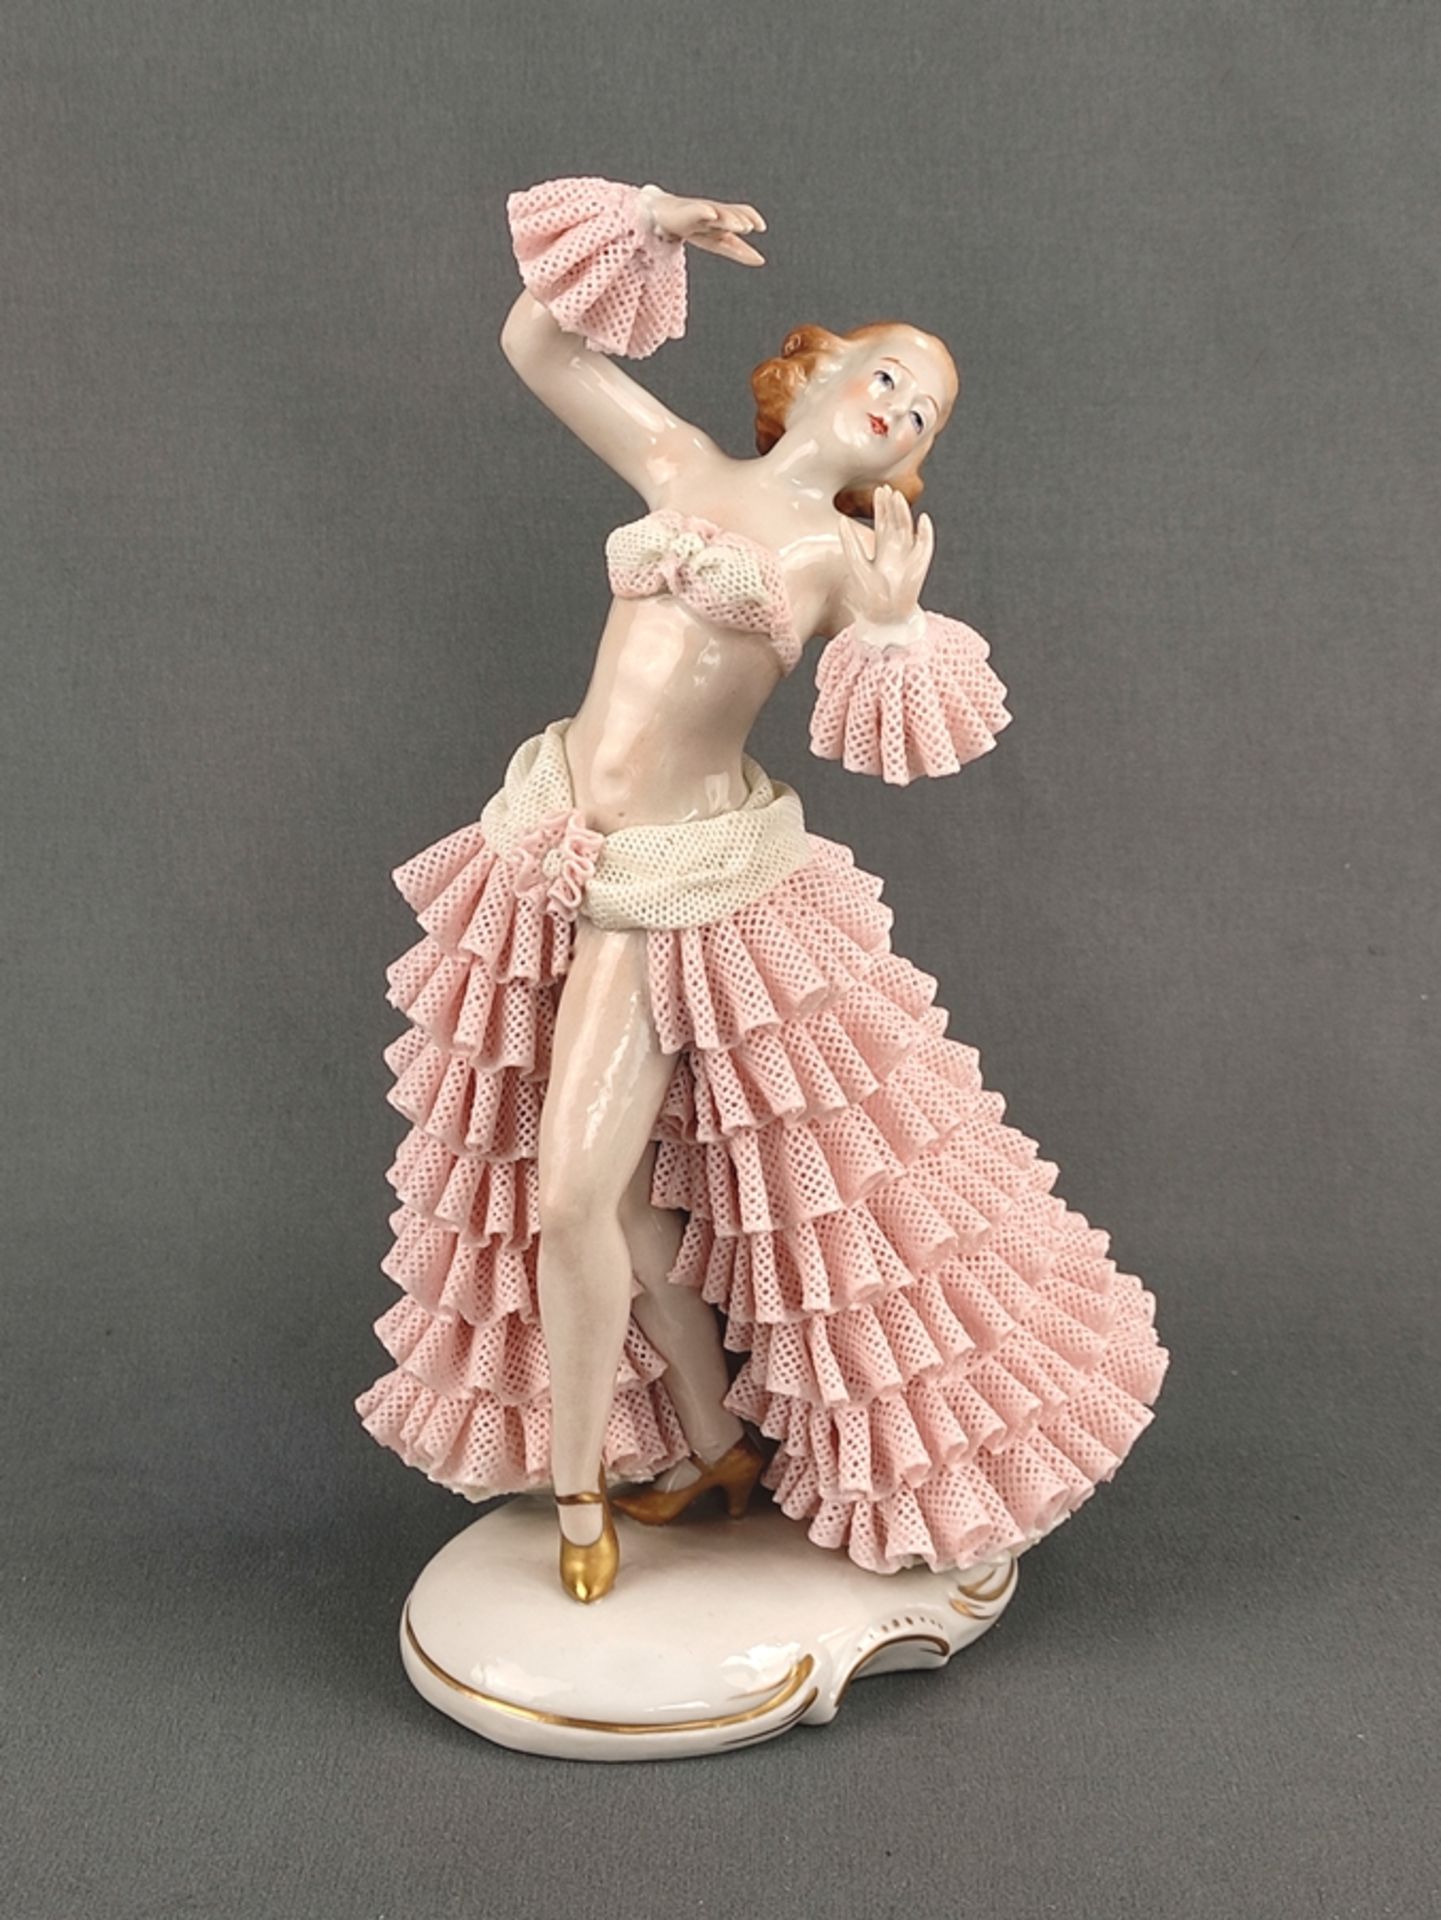 Porzellanfigur "Tänzerin", Sitzendorfer Porzellanmanufaktur, 20. Jahrhundert, vollplastische Darste